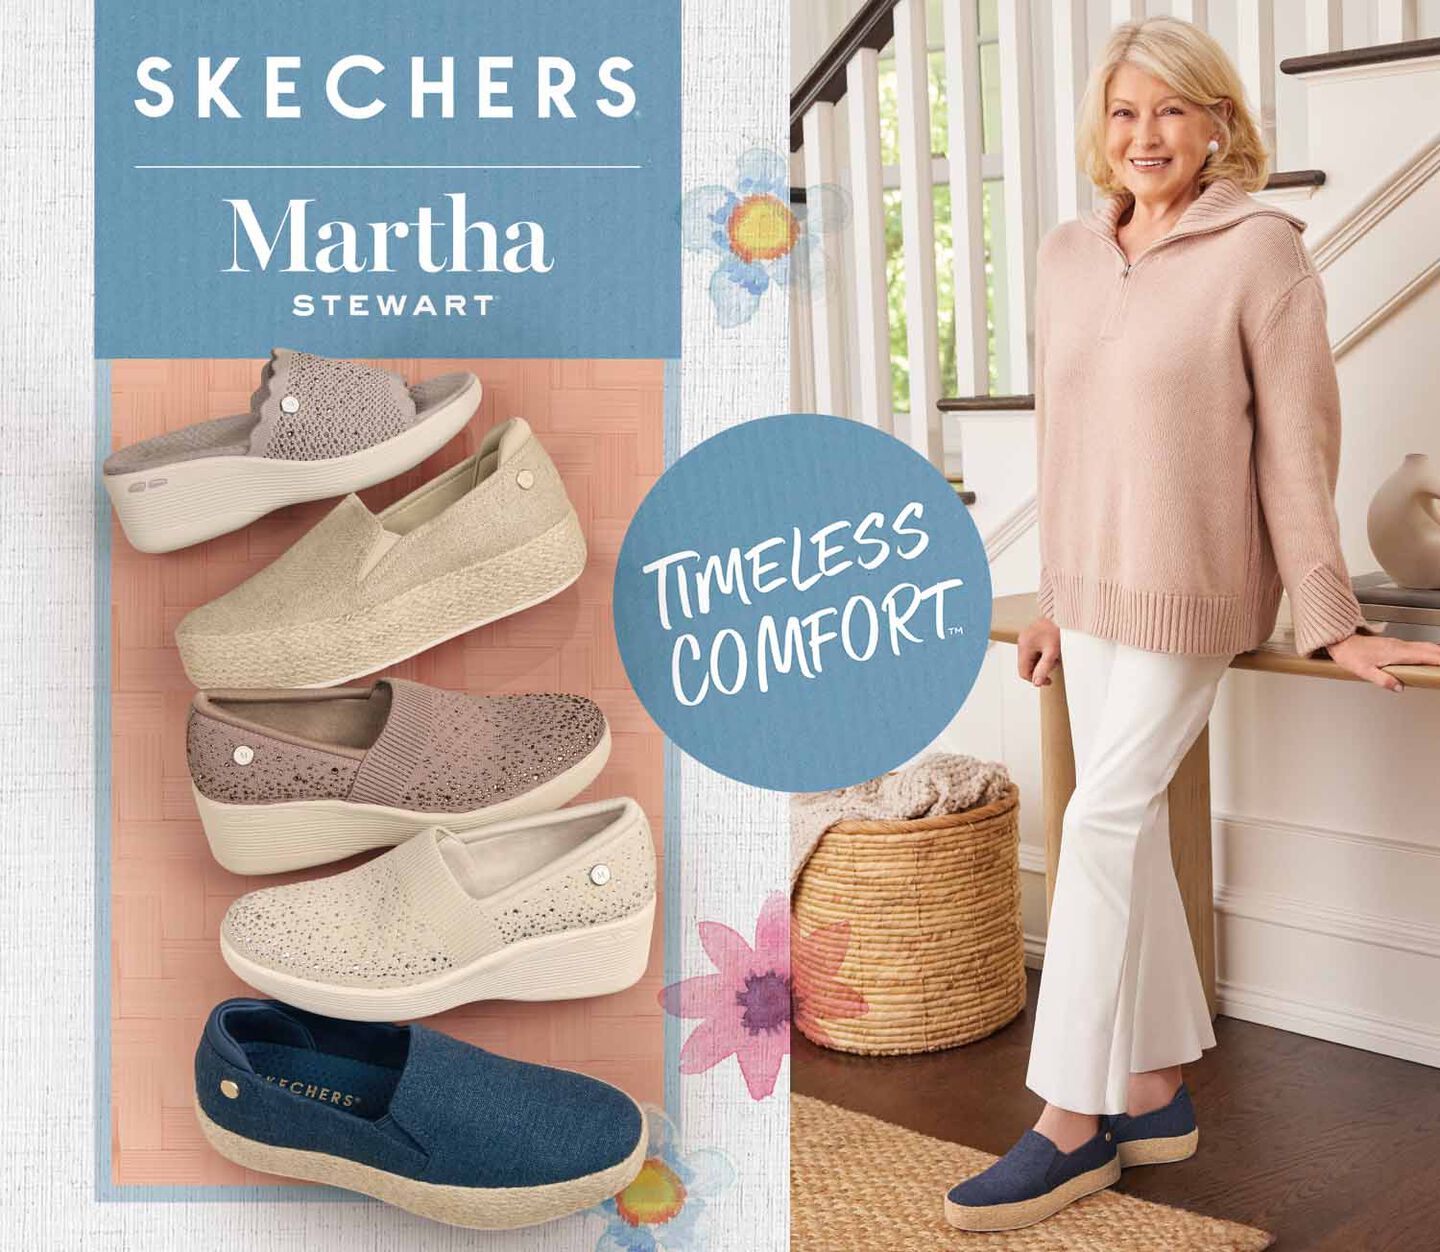 Skechers x Martha Stewart